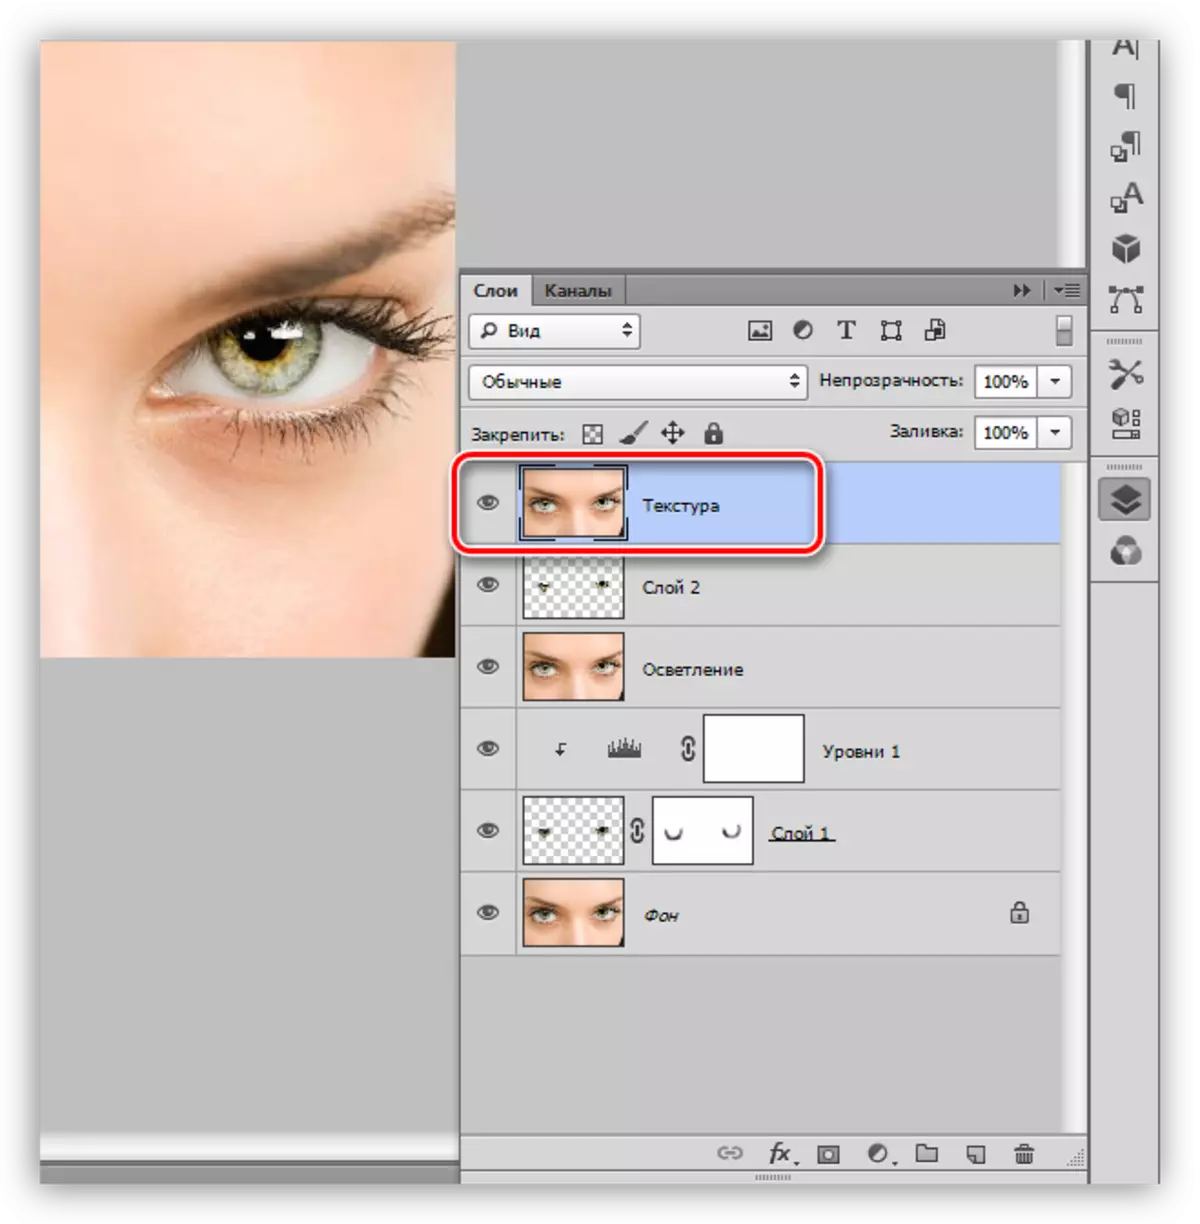 Criando uma cópia combinada de todas as camadas na paleta com a textura do nome quando a seleção de olhos no Photoshop